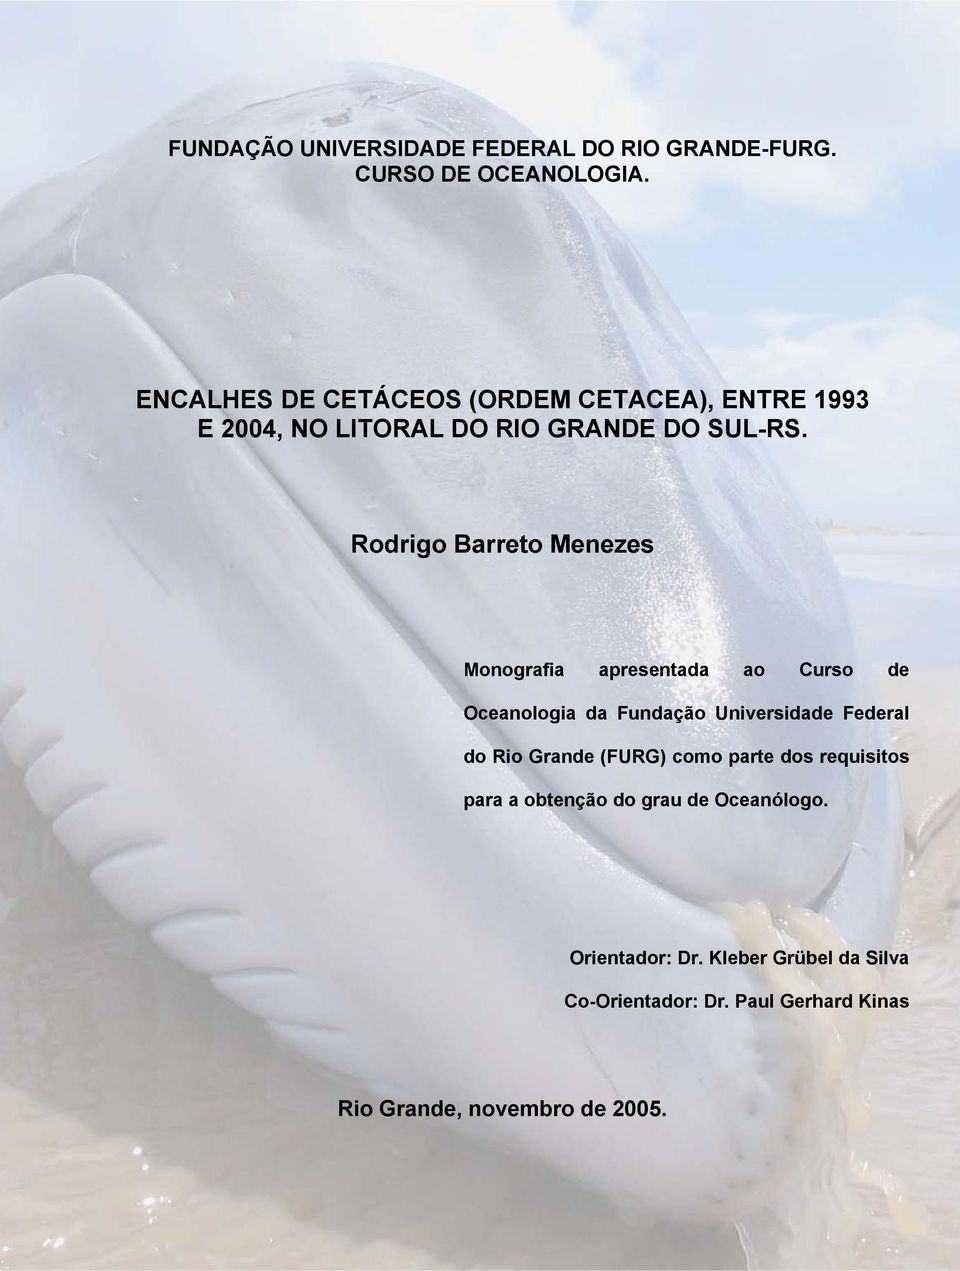 Rodrigo Barreto Menezes Monografia apresentada ao Curso de Oceanologia da Fundação Universidade Federal do Rio